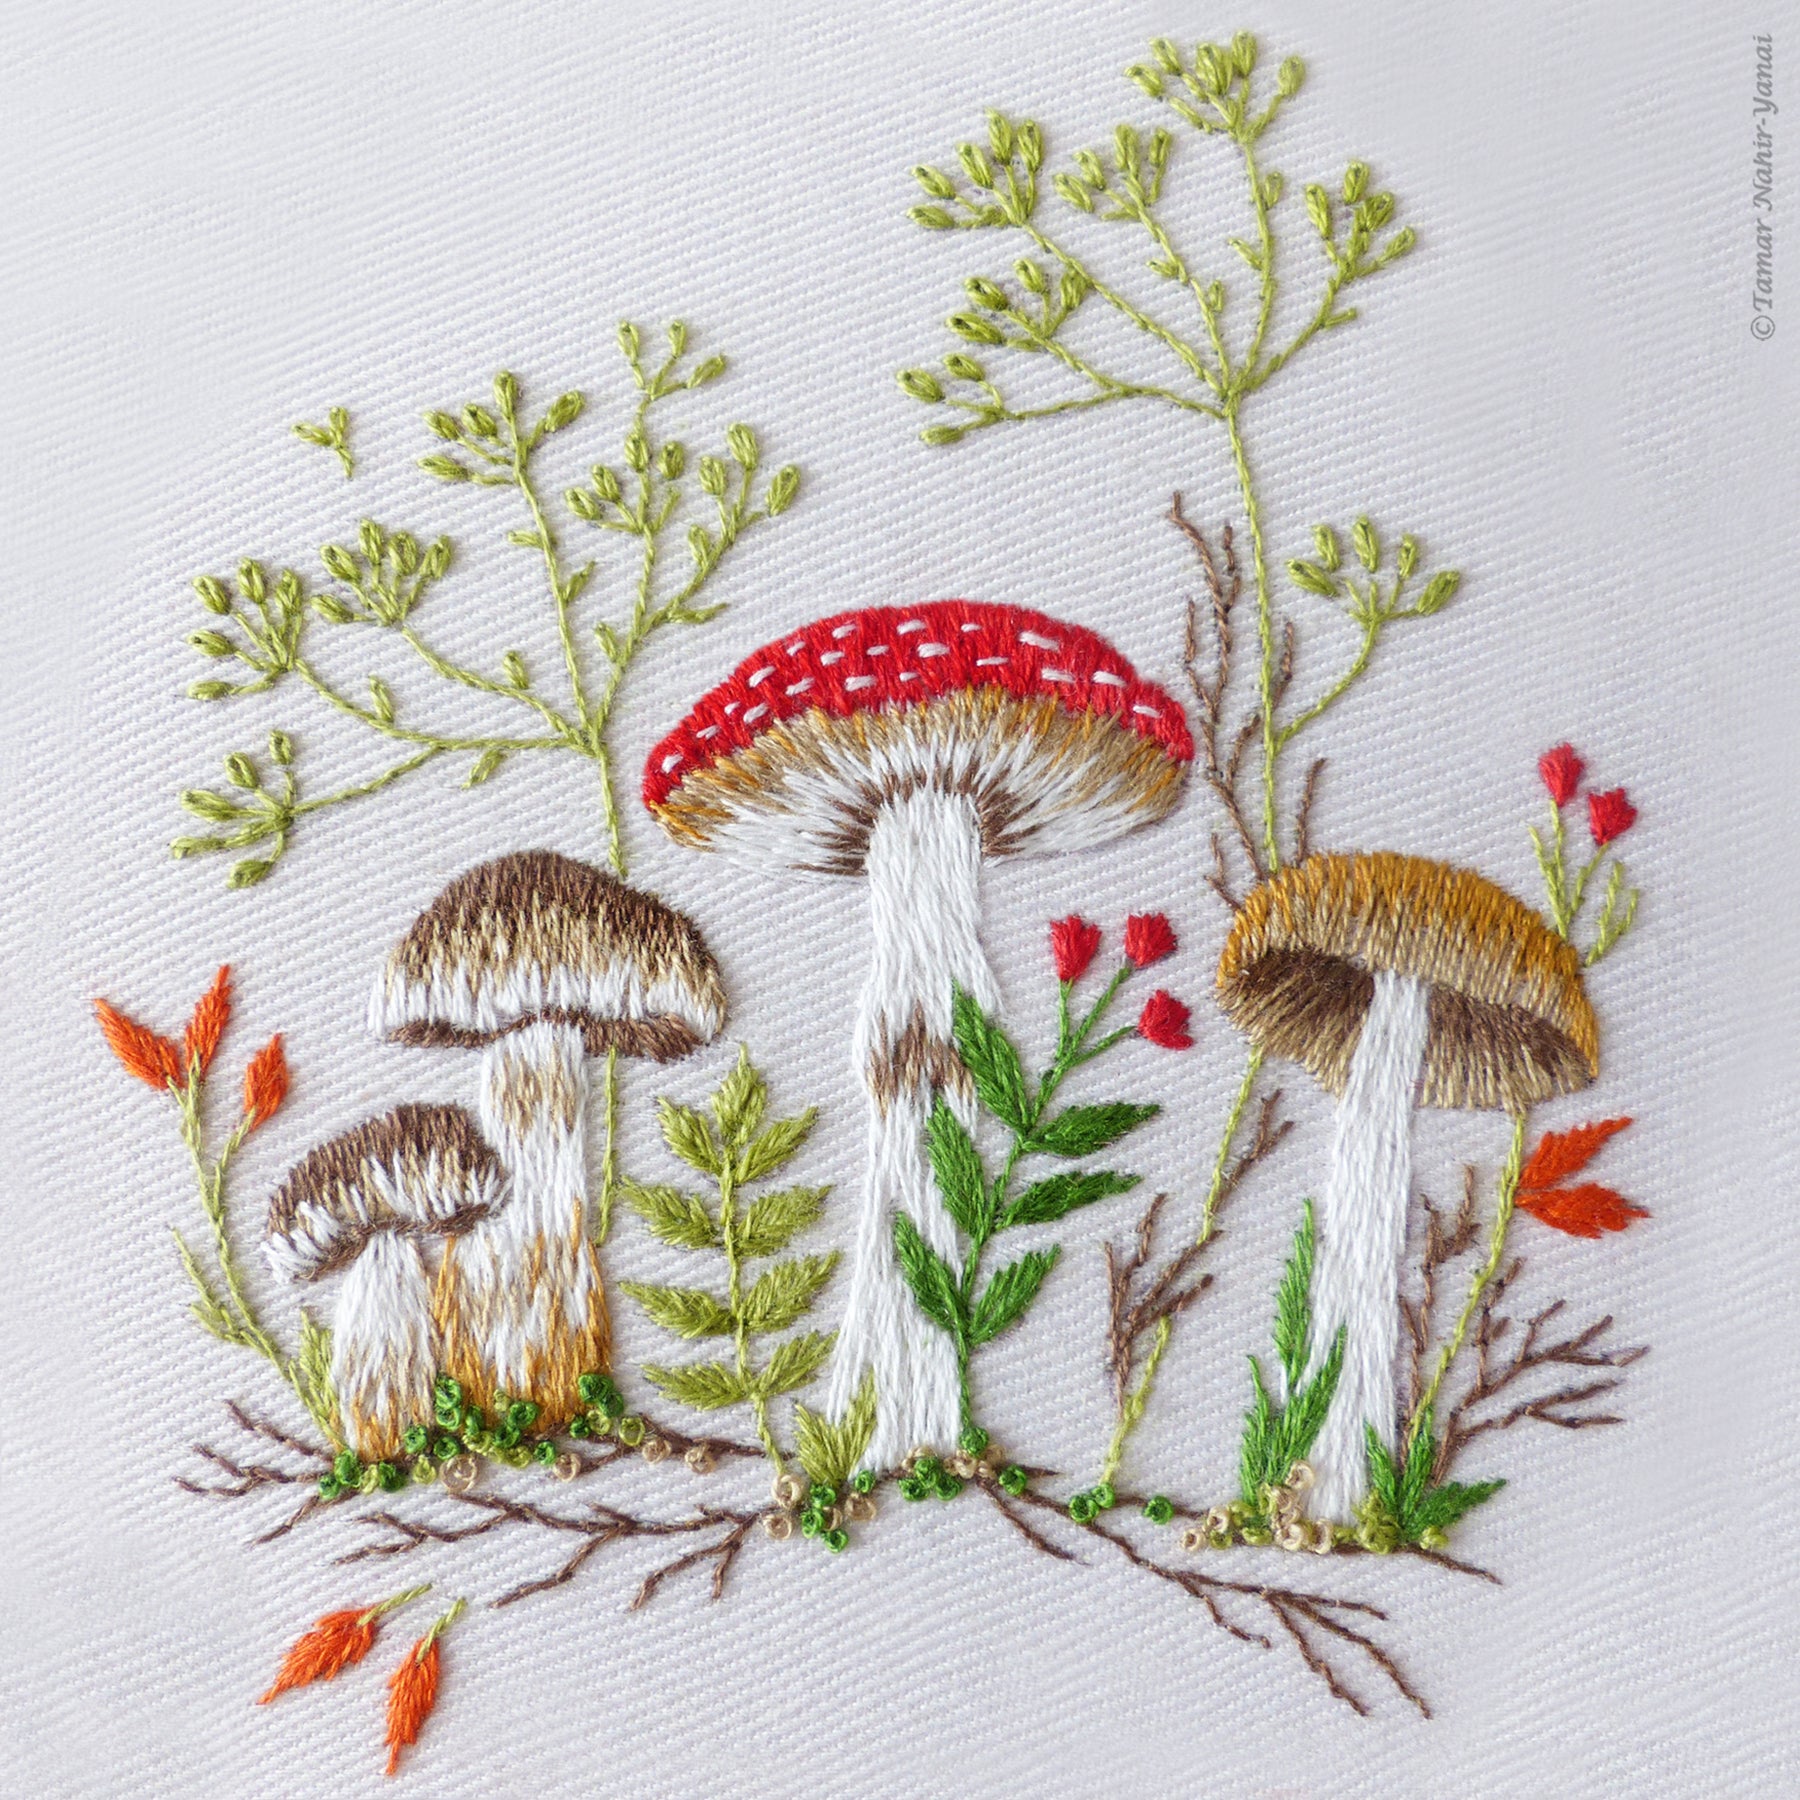 Mushroom Embroidery Digital Kit Beginner, Nature Embroidery PDF DIY KITS, Mushroom  Embroidery Diy Kit, Gift for Her, Fall Embroidery 